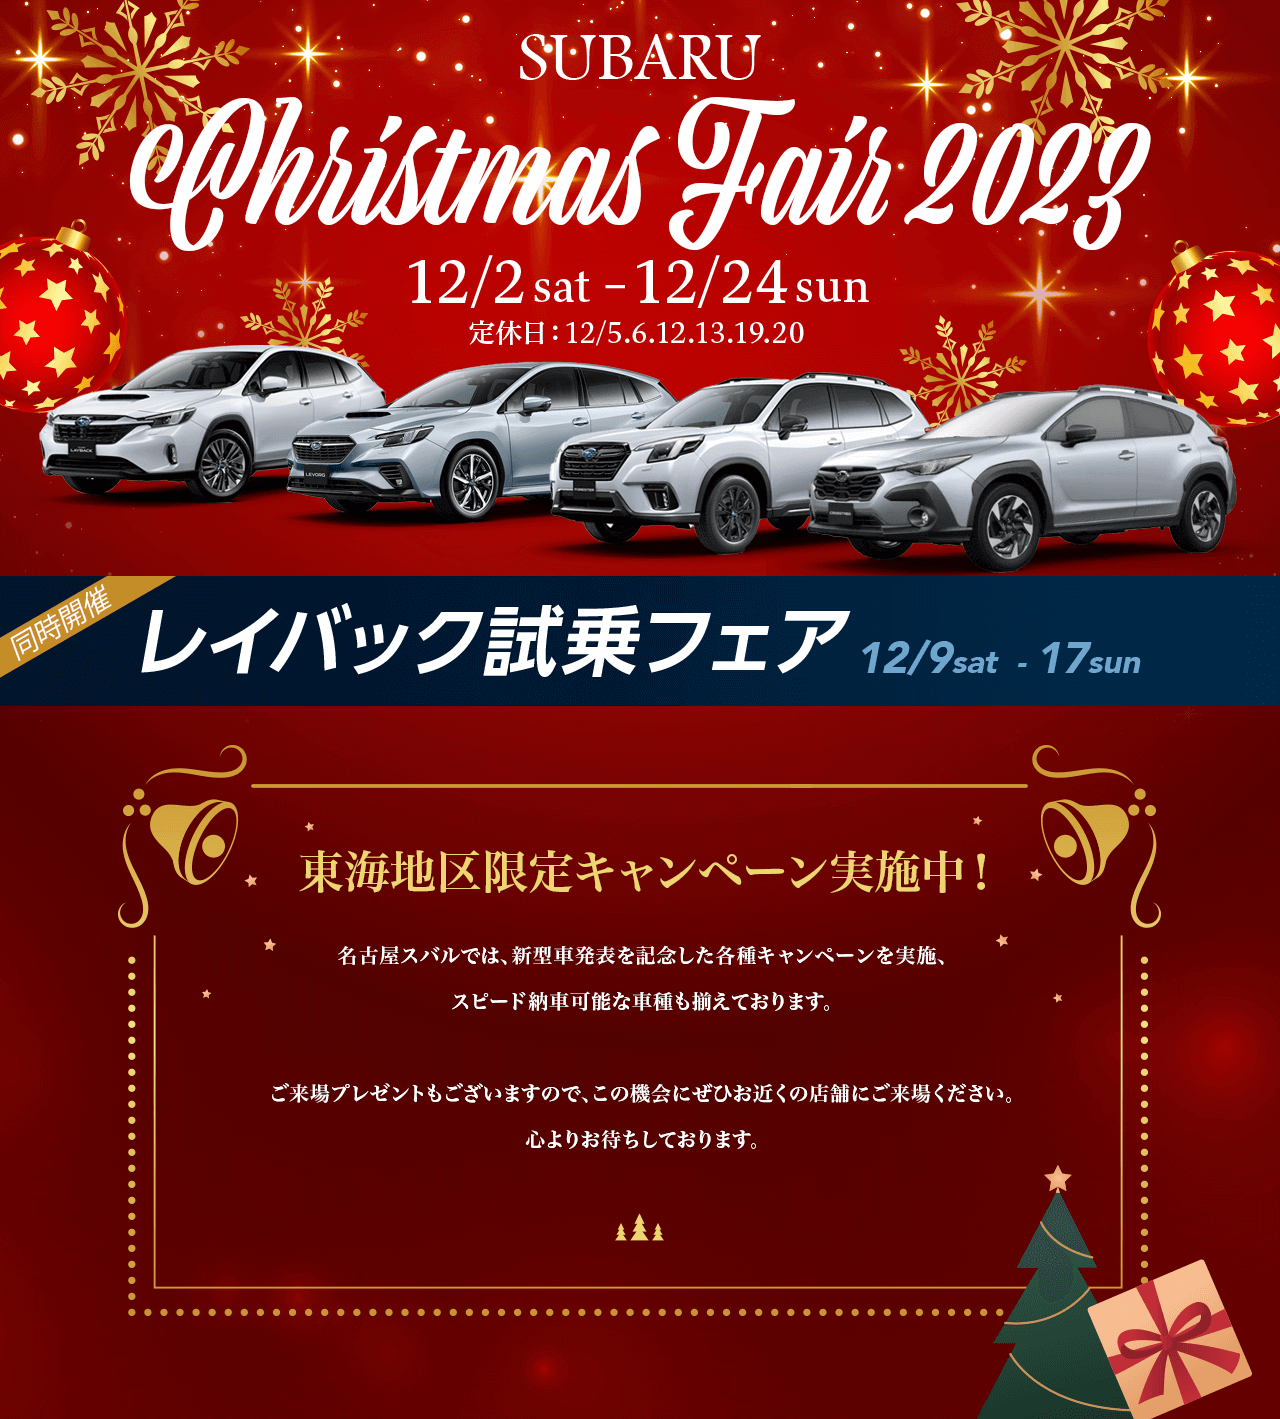 SUBARU Christmas Fair 2023.12/2 sat–12/24 sun 定休日：12/5.6.12.13.19.20東海地区限定キャンペーン実施中！名古屋スバルでは、新型車発表を記念した各種キャンペーンを実施、 スピード納車可能な車種も揃えております。ご来場プレゼントもございますので、この機会にぜひお近くの店舗にご来場ください。心よりお待ちしております。